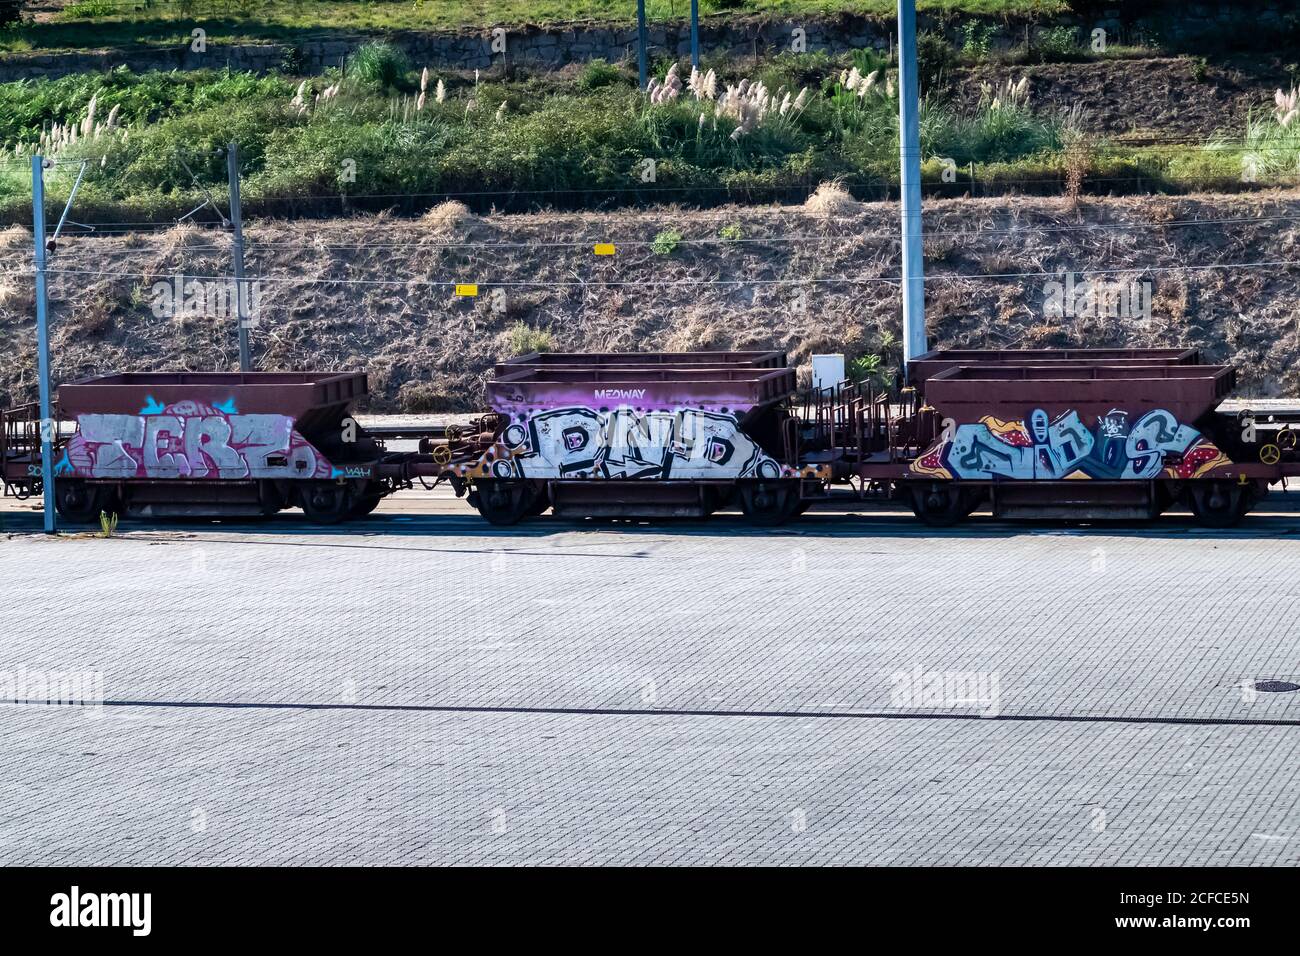 Street art graffiti sur les wagons de transport au Portugal, gare d'aveleda. Banque D'Images